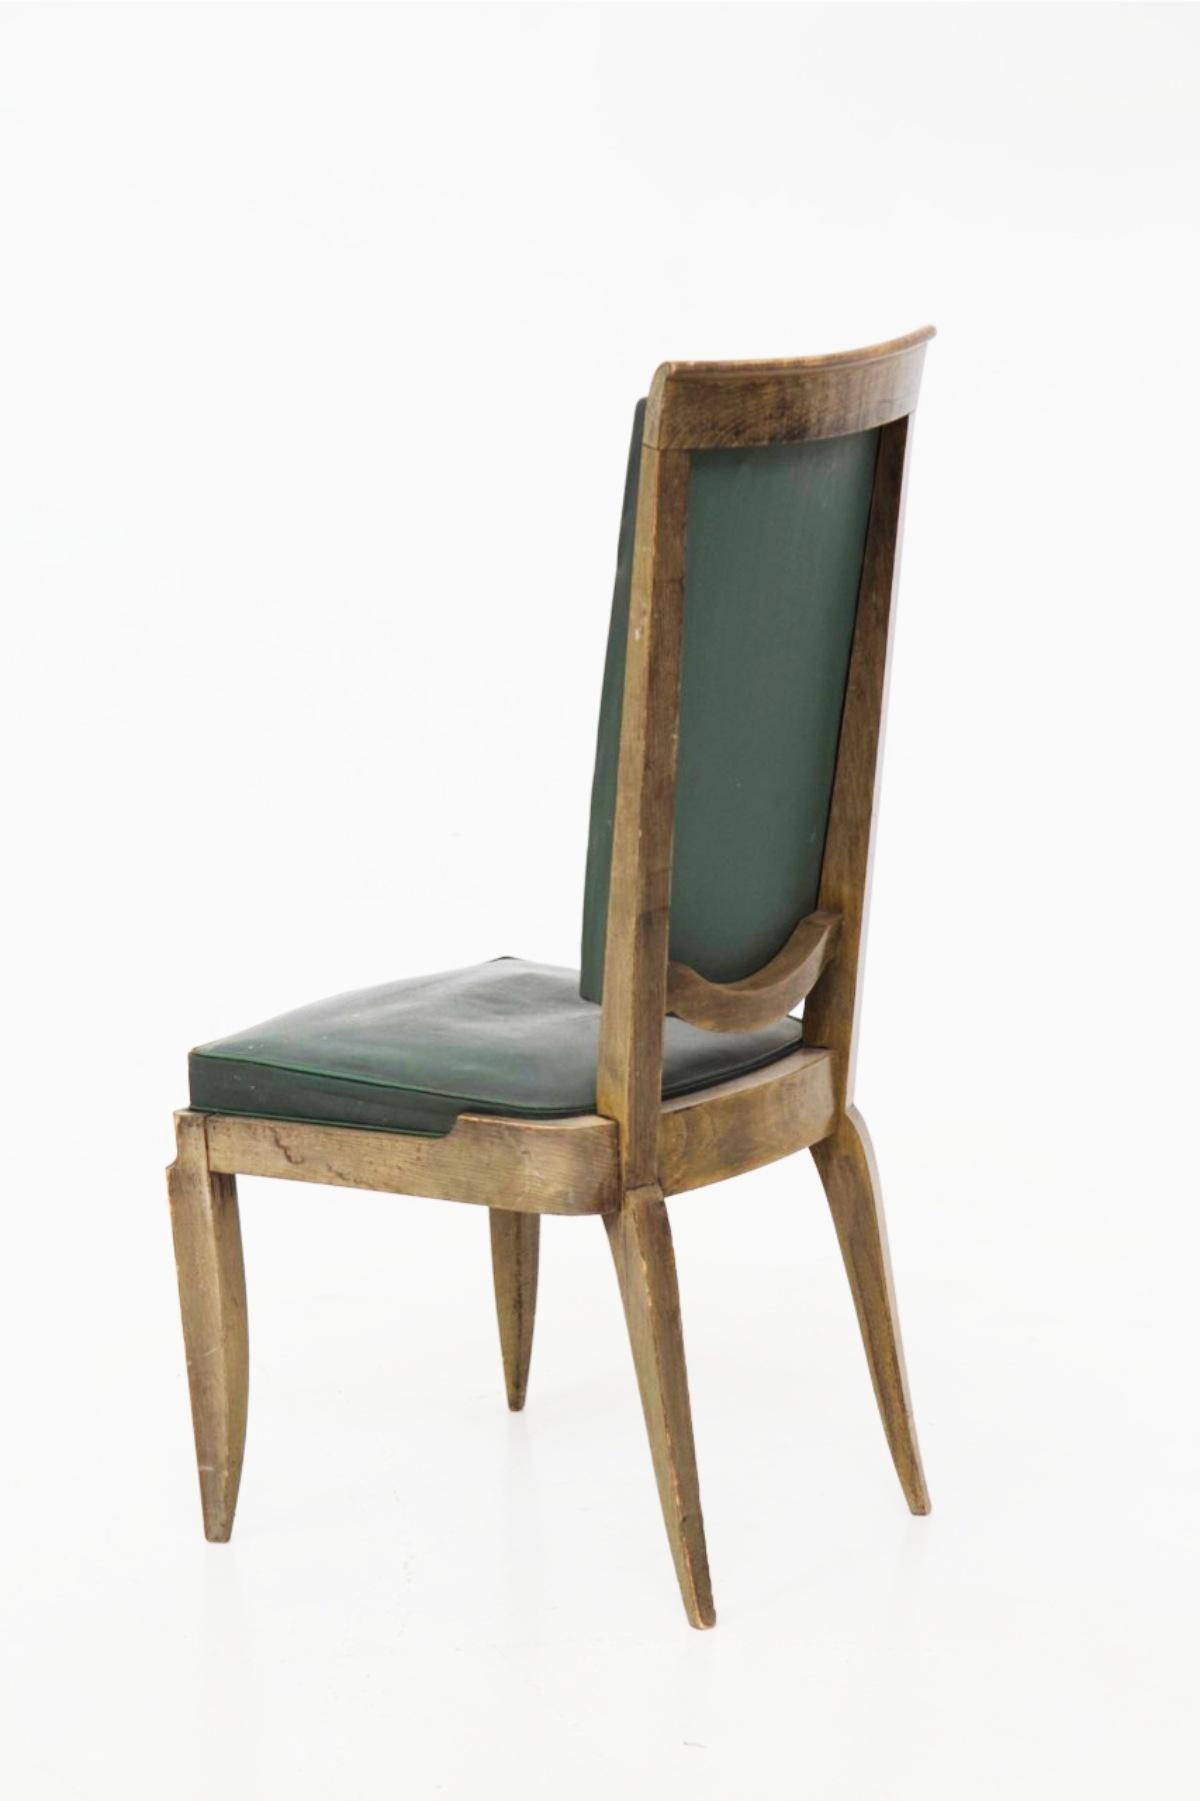 Wunderschönes Set bestehend aus vier Holzstühlen, entworfen in den 1930er Jahren von Jules Leleu, französische Manufaktur.
Die Stühle haben sehr exzentrische Formen, sowohl hart geometrisch als auch weich und bequem.
Die Stühle haben einen feinen